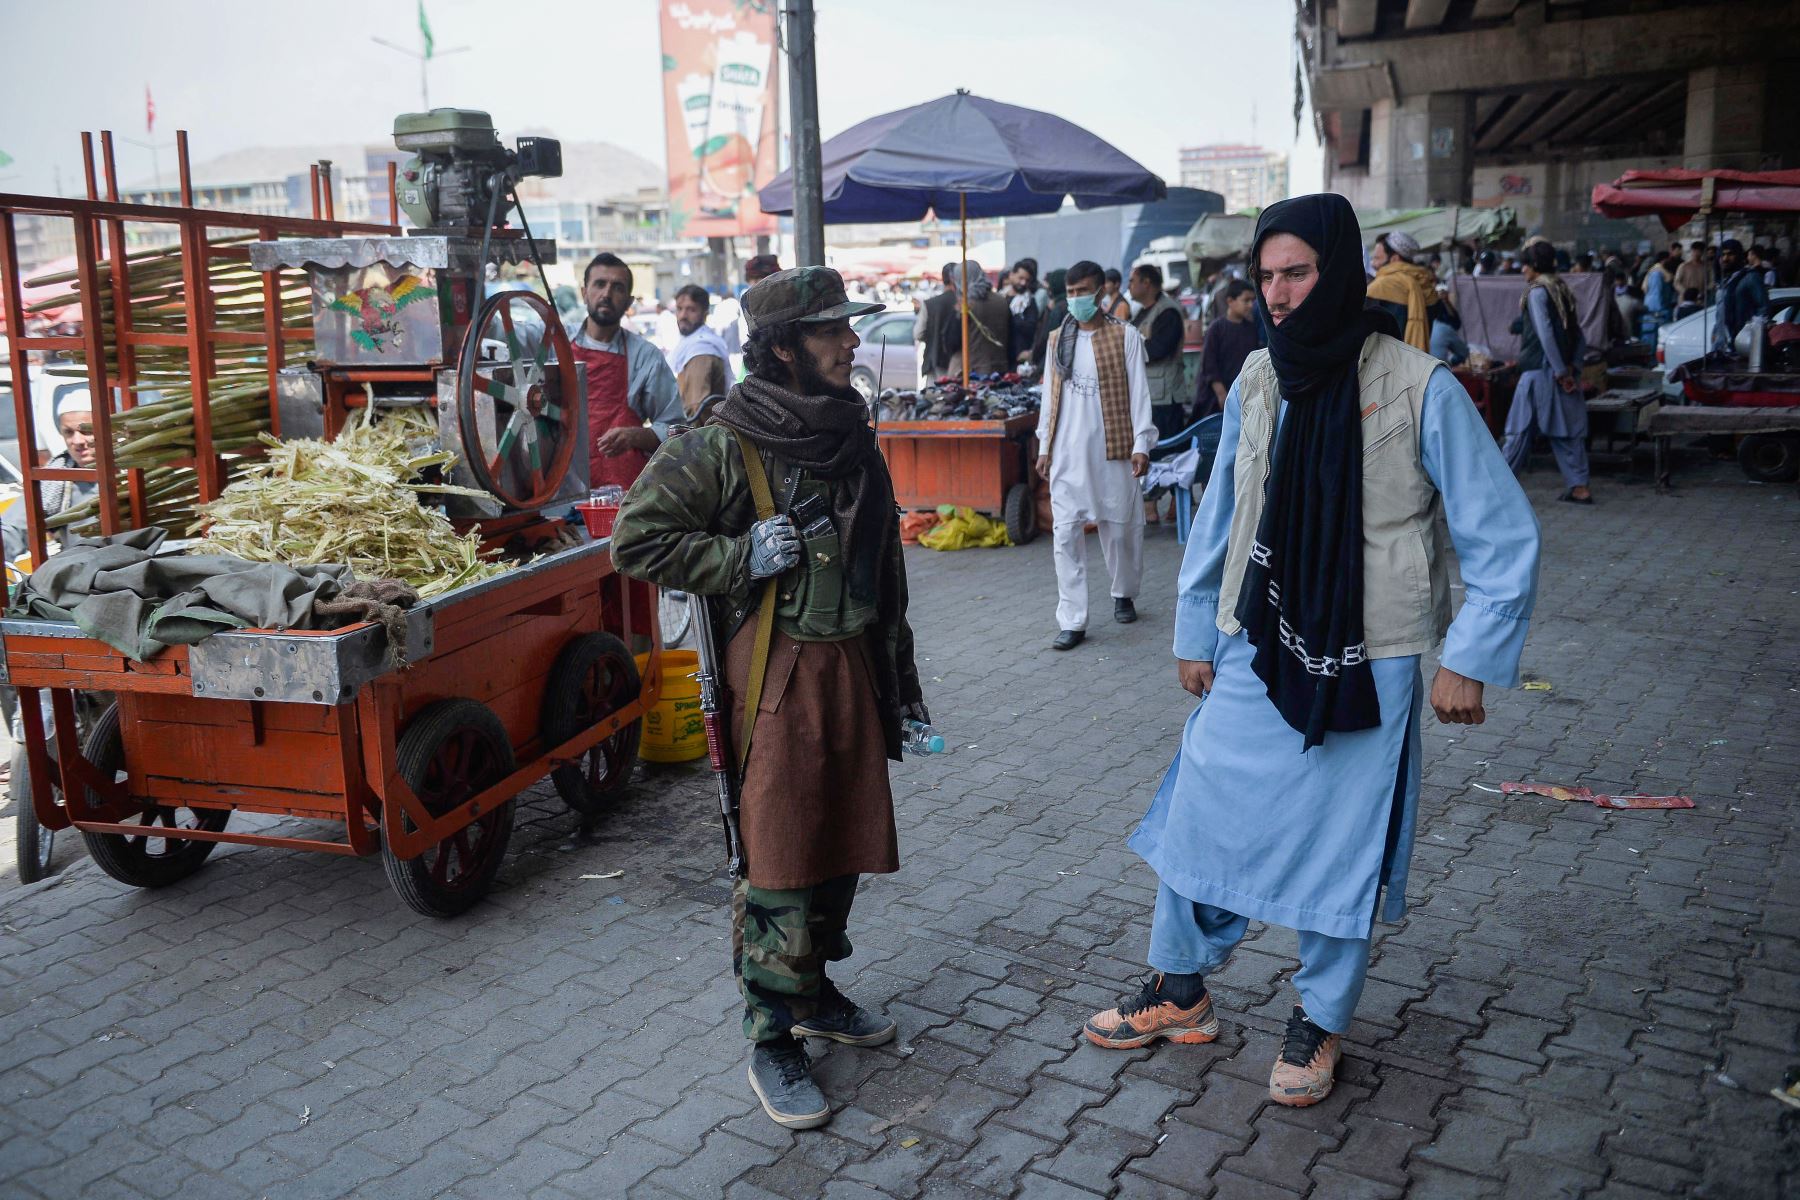 Un combatiente talibán junto a un quiosco que vende jugo de caña de azúcar en un área de mercado, se reunió con los afganos locales en el área de Kote Sangi de Kabul, después de que los talibanes tomaron el control de la capital tras el colapso del gobierno afgano.

Foto: AFP